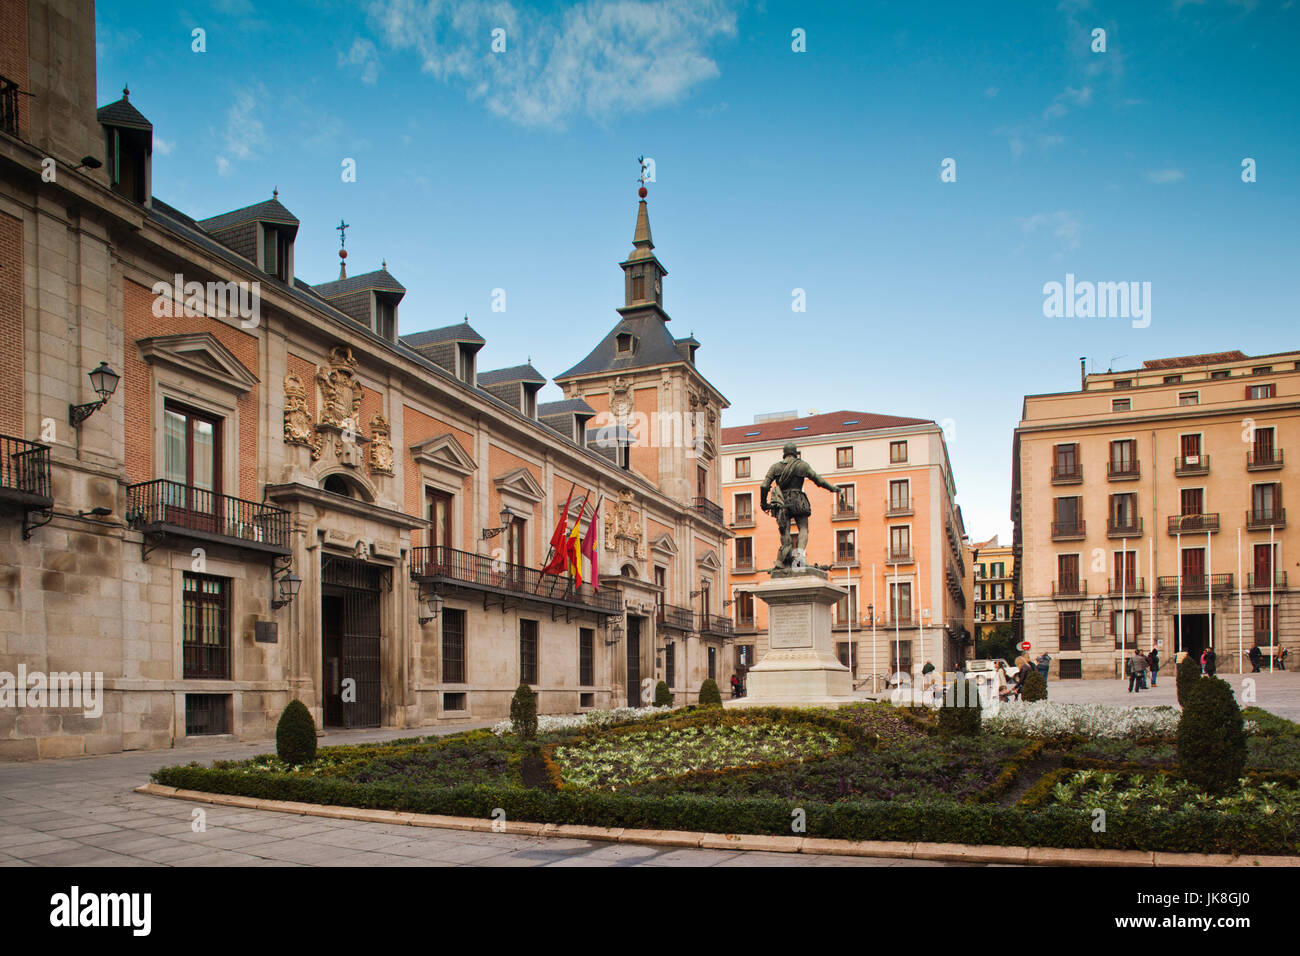 Spain, Madrid, Centro Area, Plaza de la Villa, town hall Stock Photo